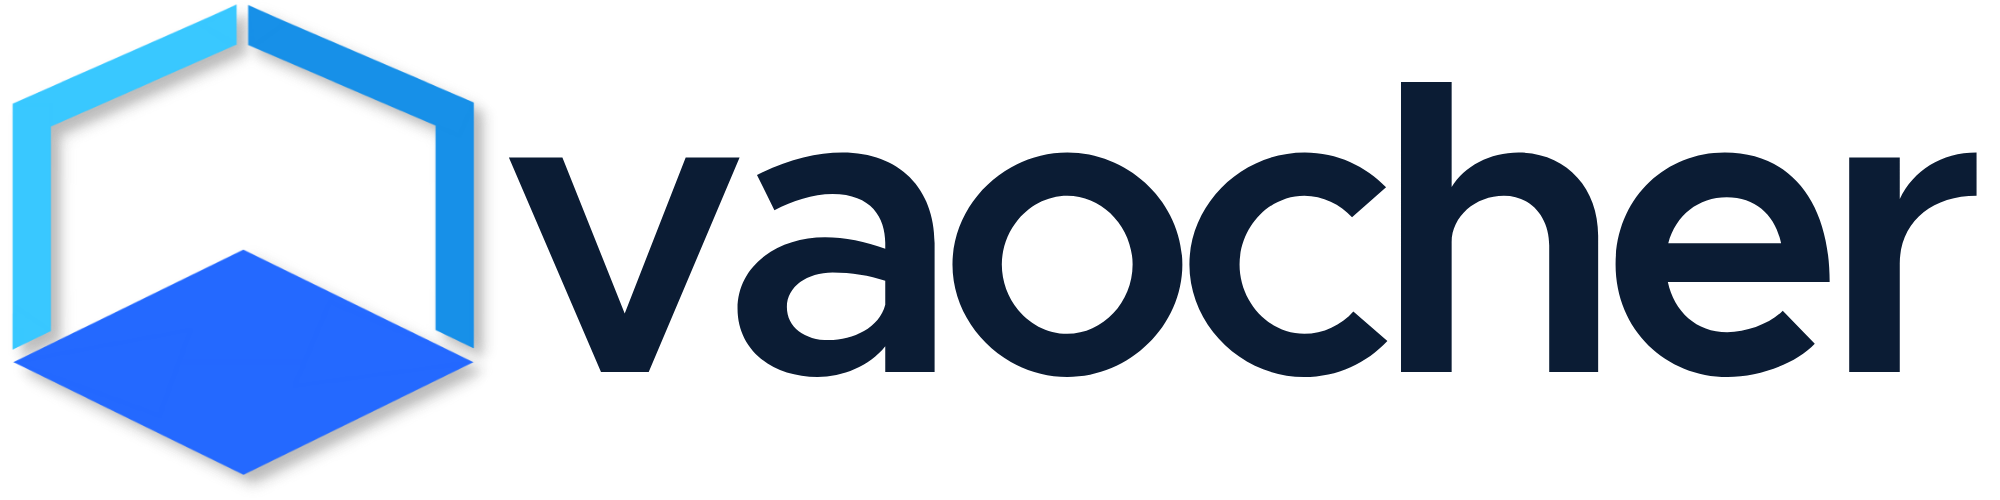 VaocherApp logo